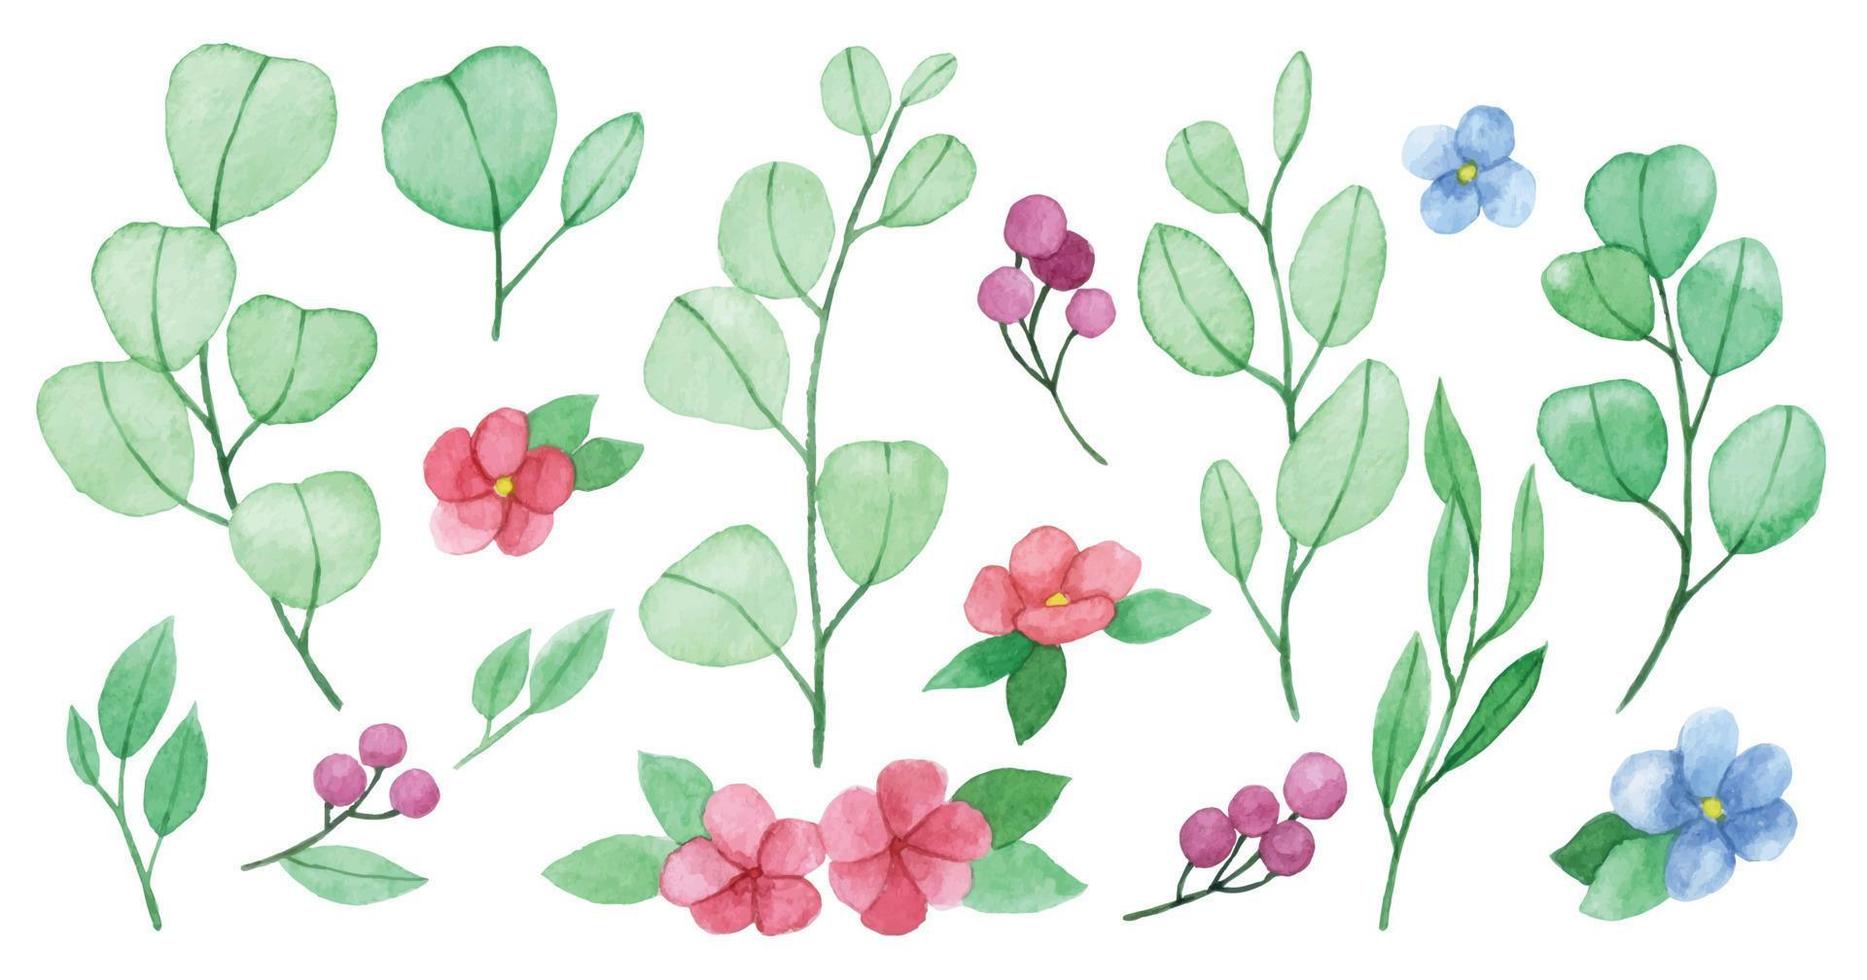 dibujo de acuarela. conjunto de lindas hojas de eucalipto, flores y bayas. dibujo estilizado simple en colores pastel vector